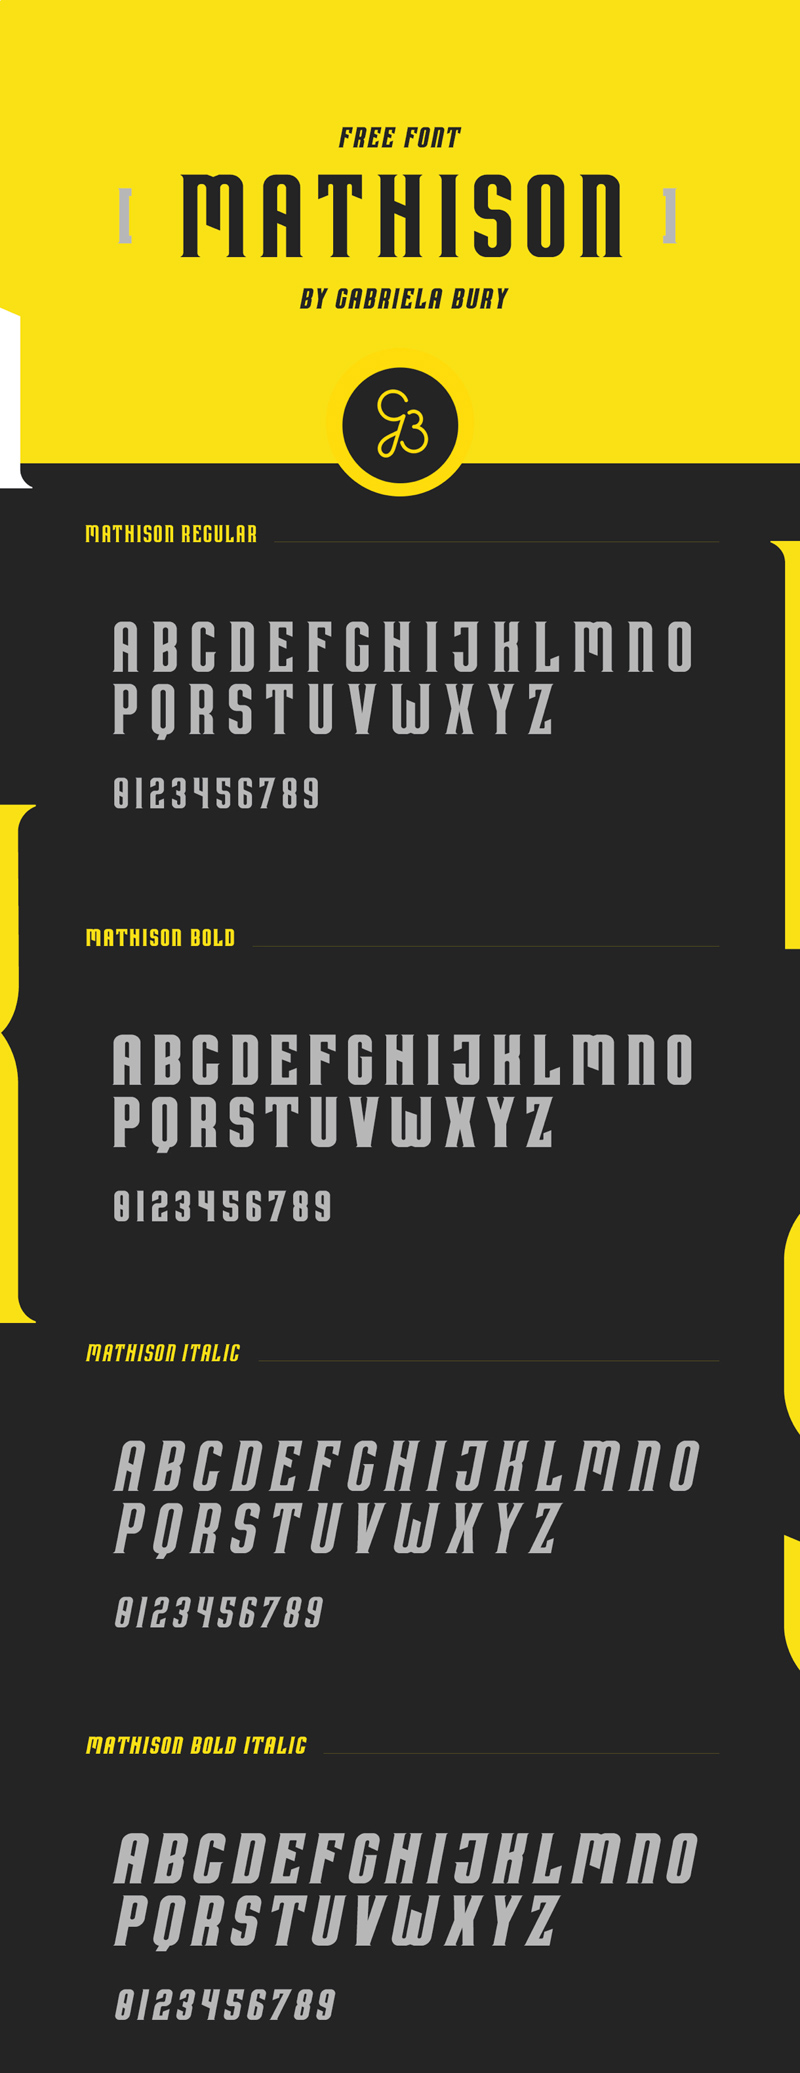 Font Mathison - Typographie gratuite